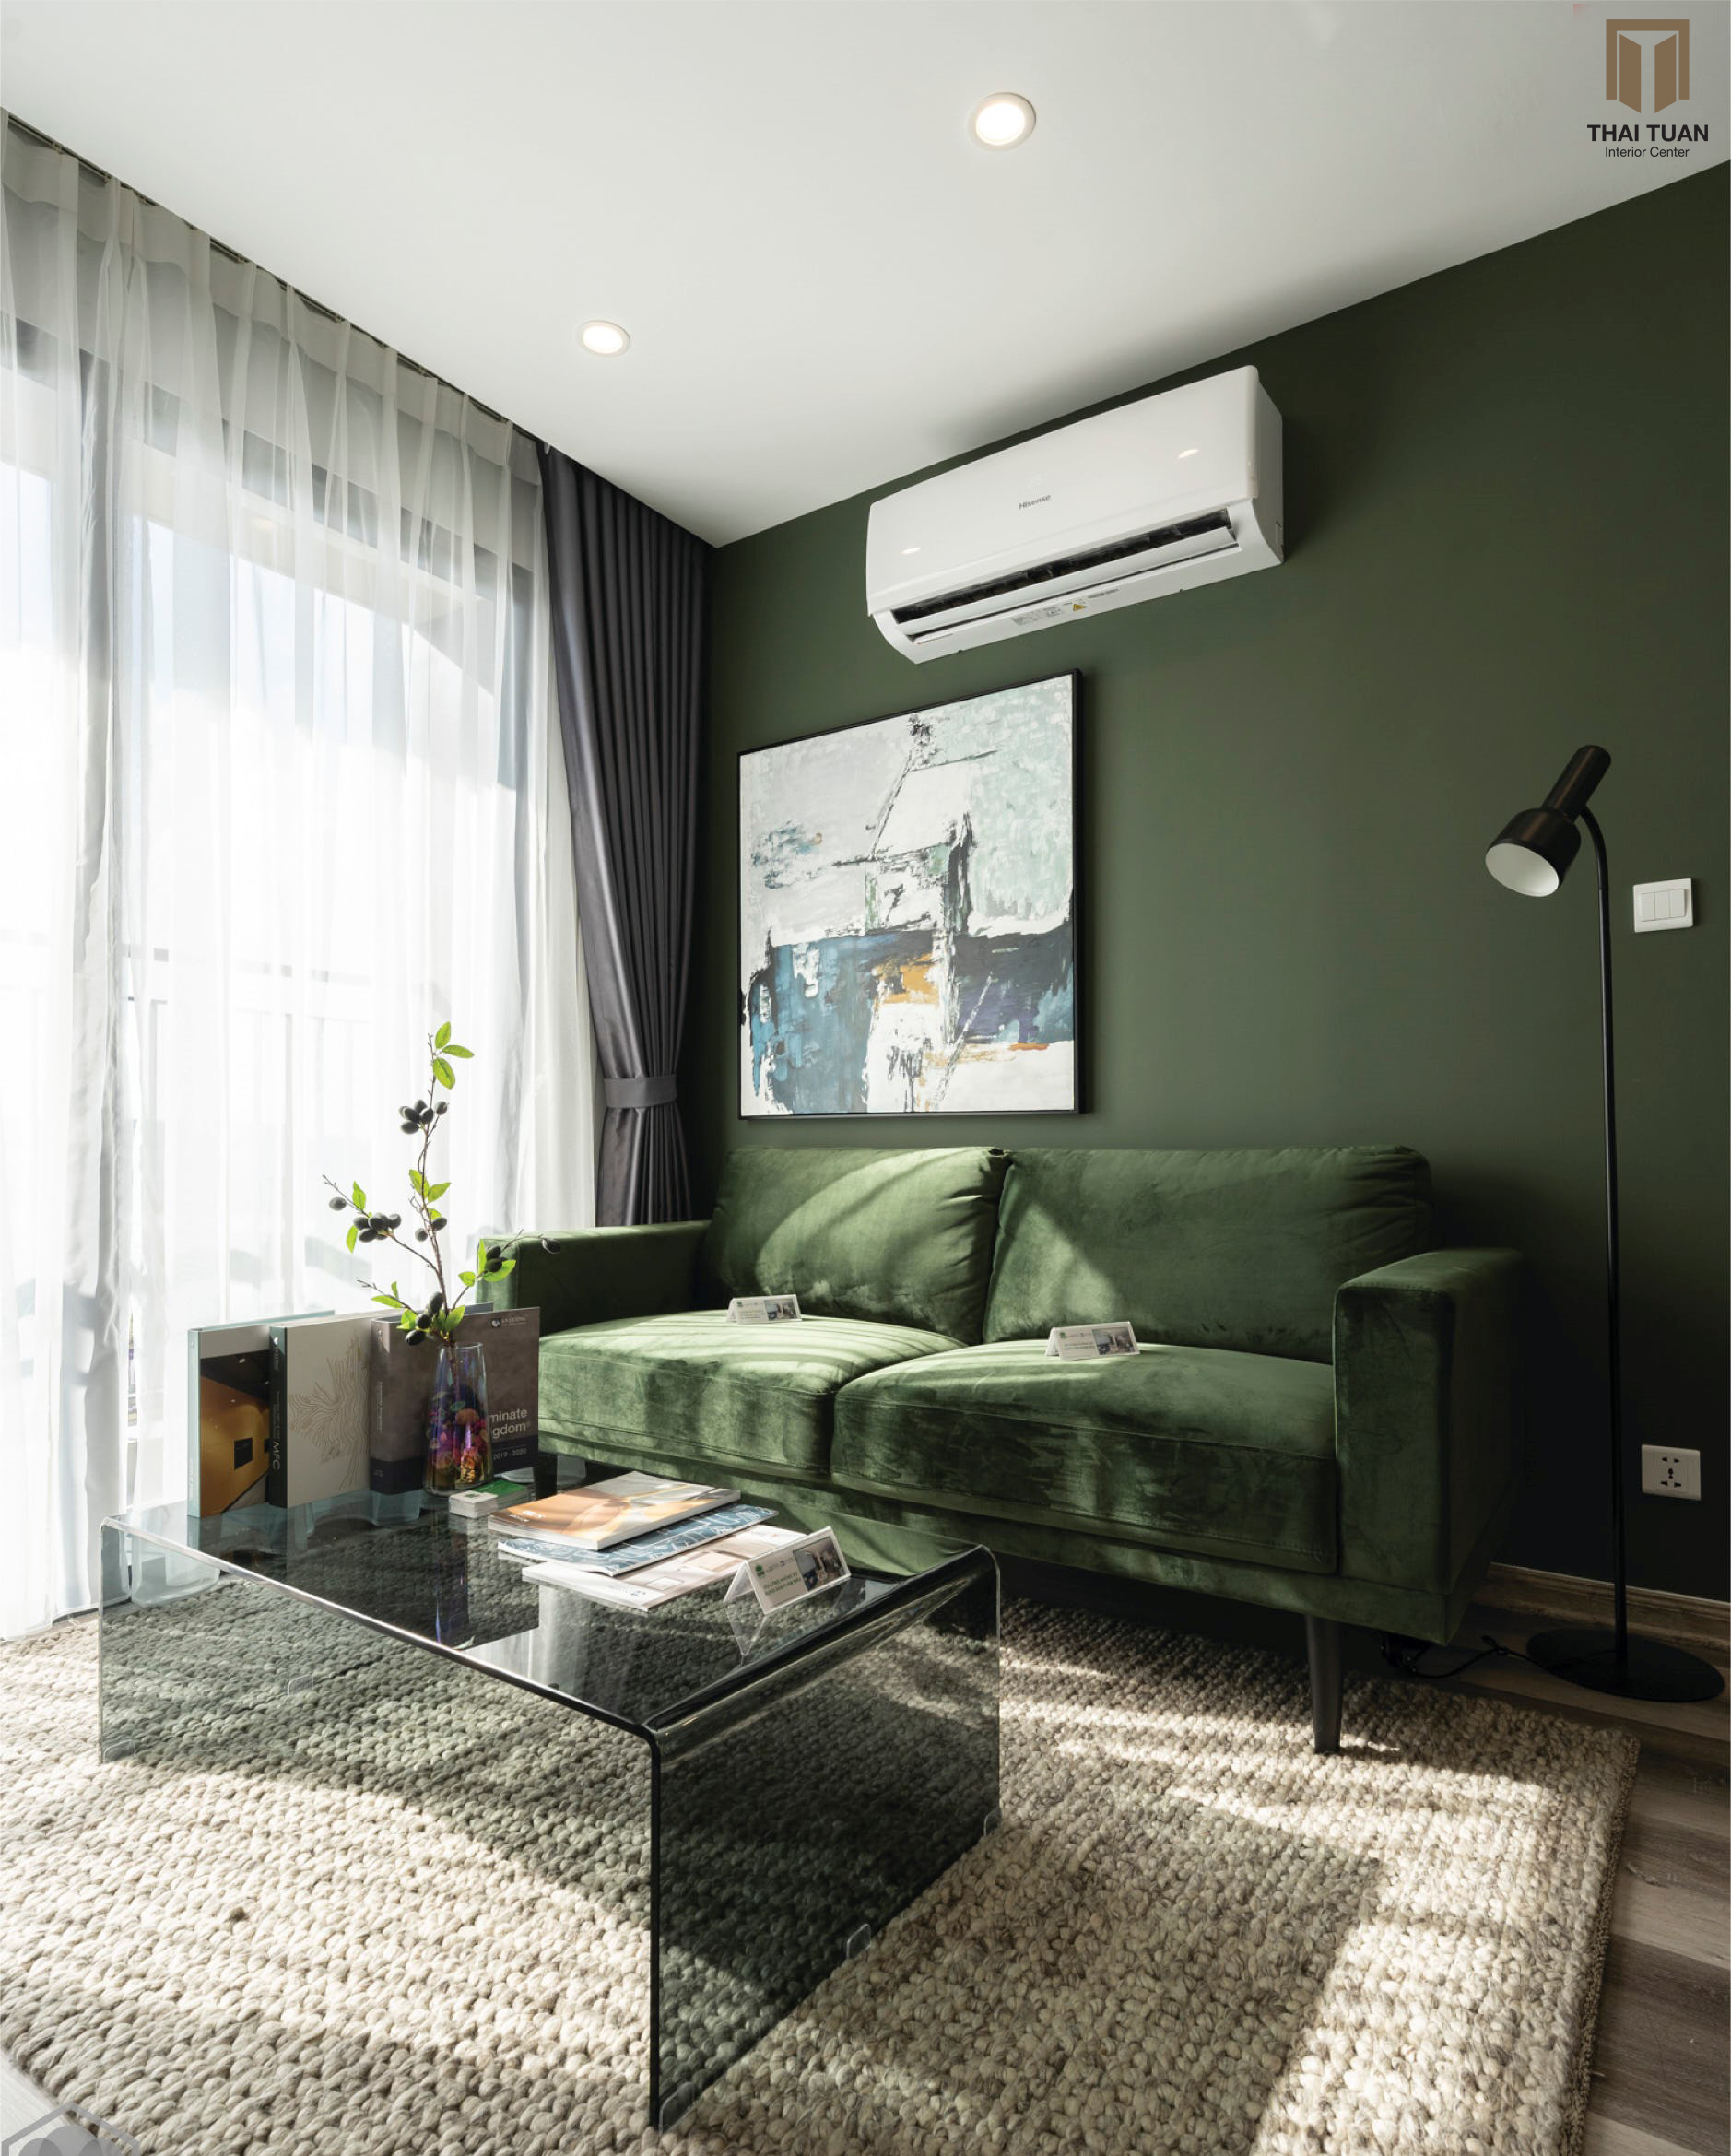 Sofa AConcept xanh lá mạ với chất liệu vải nhung cao cấp